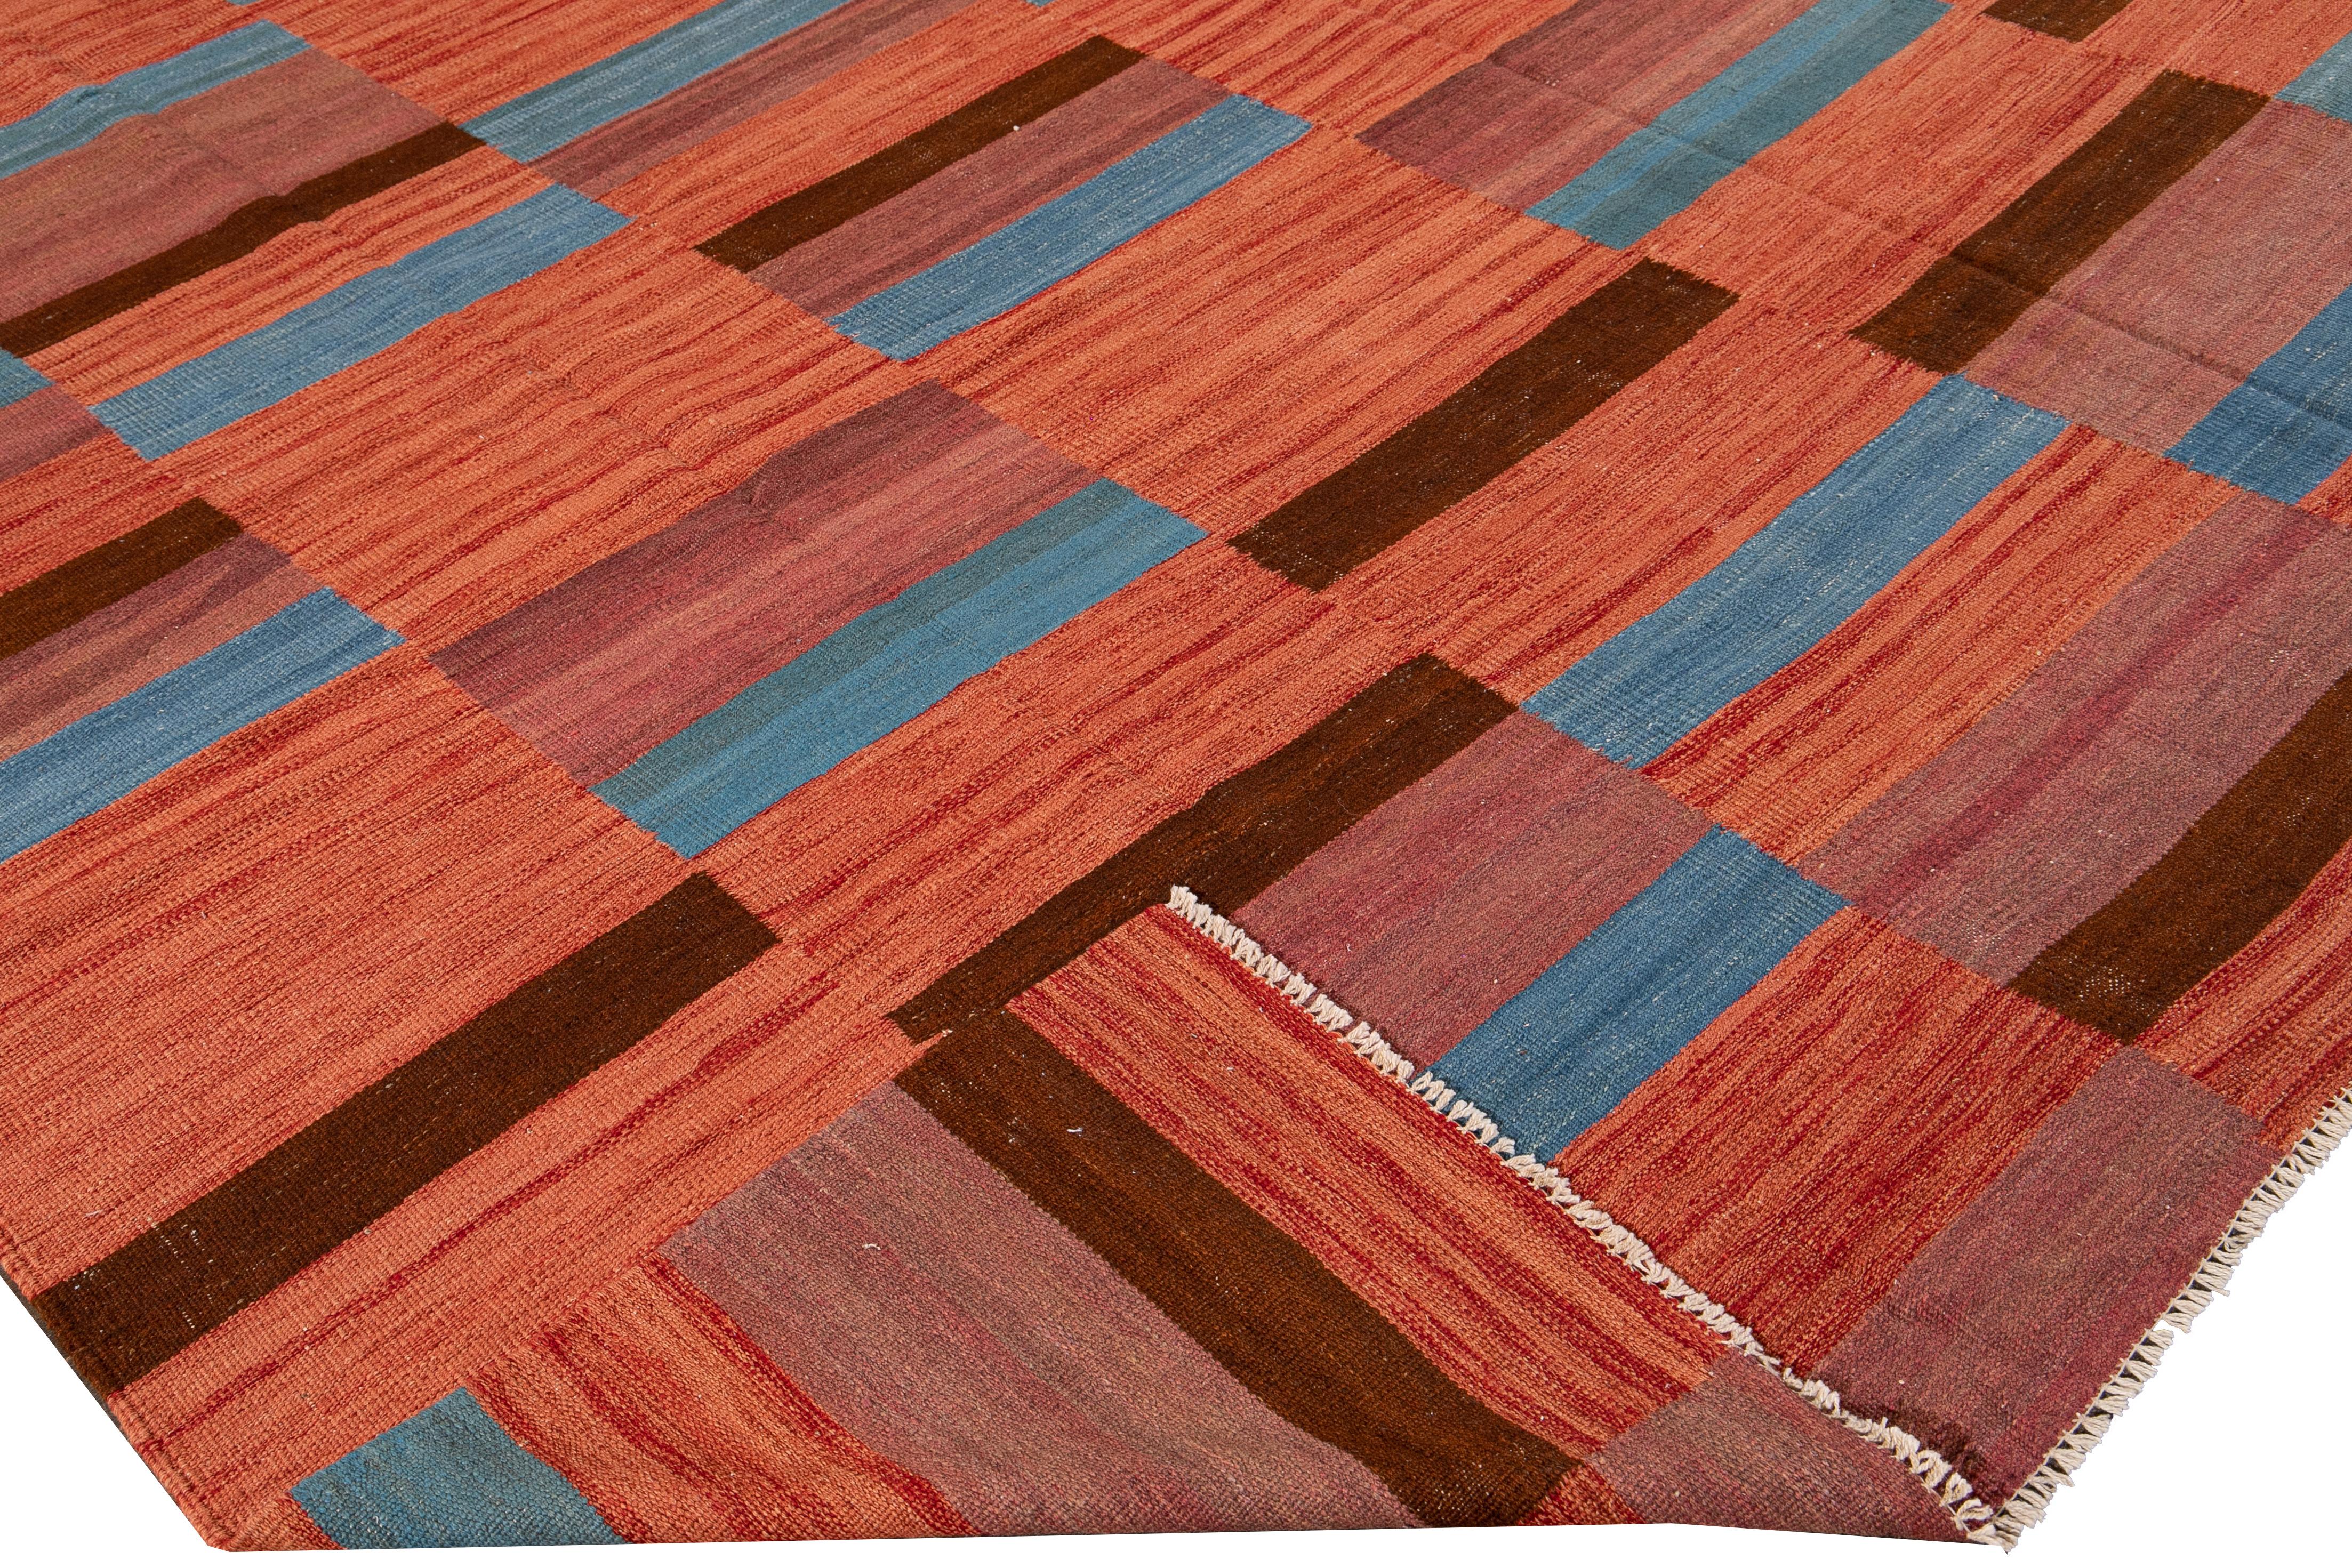 Magnifique tapis moderne Kilim en laine tissée à plat avec un champ orange. Ce tapis kilim présente des accents bleus et bruns dans un magnifique motif géométrique abstrait.

Ce tapis mesure : 8'3